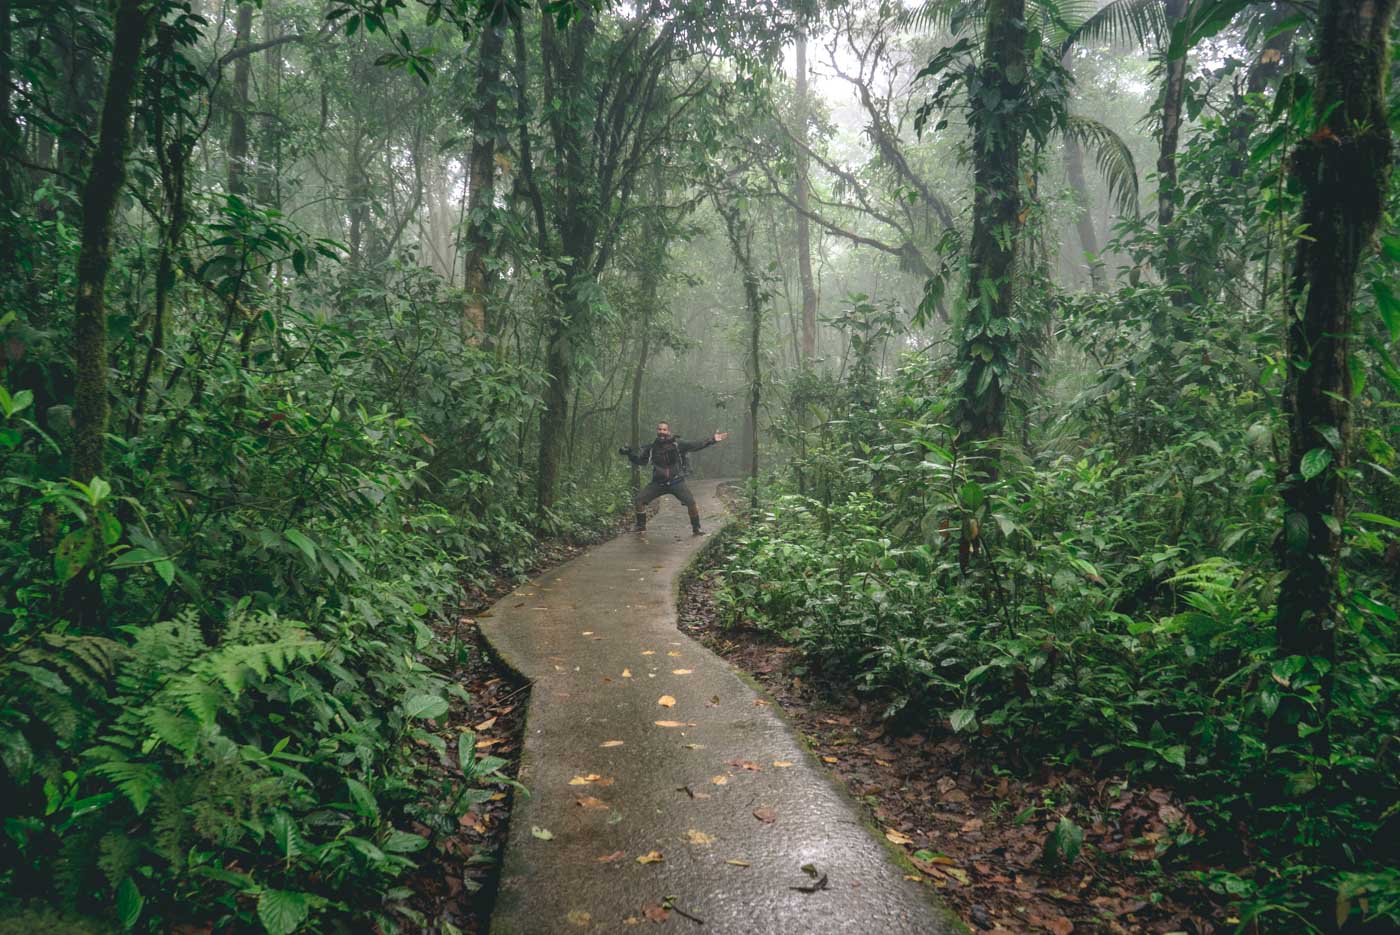 Rainy day in Tenorio National Park